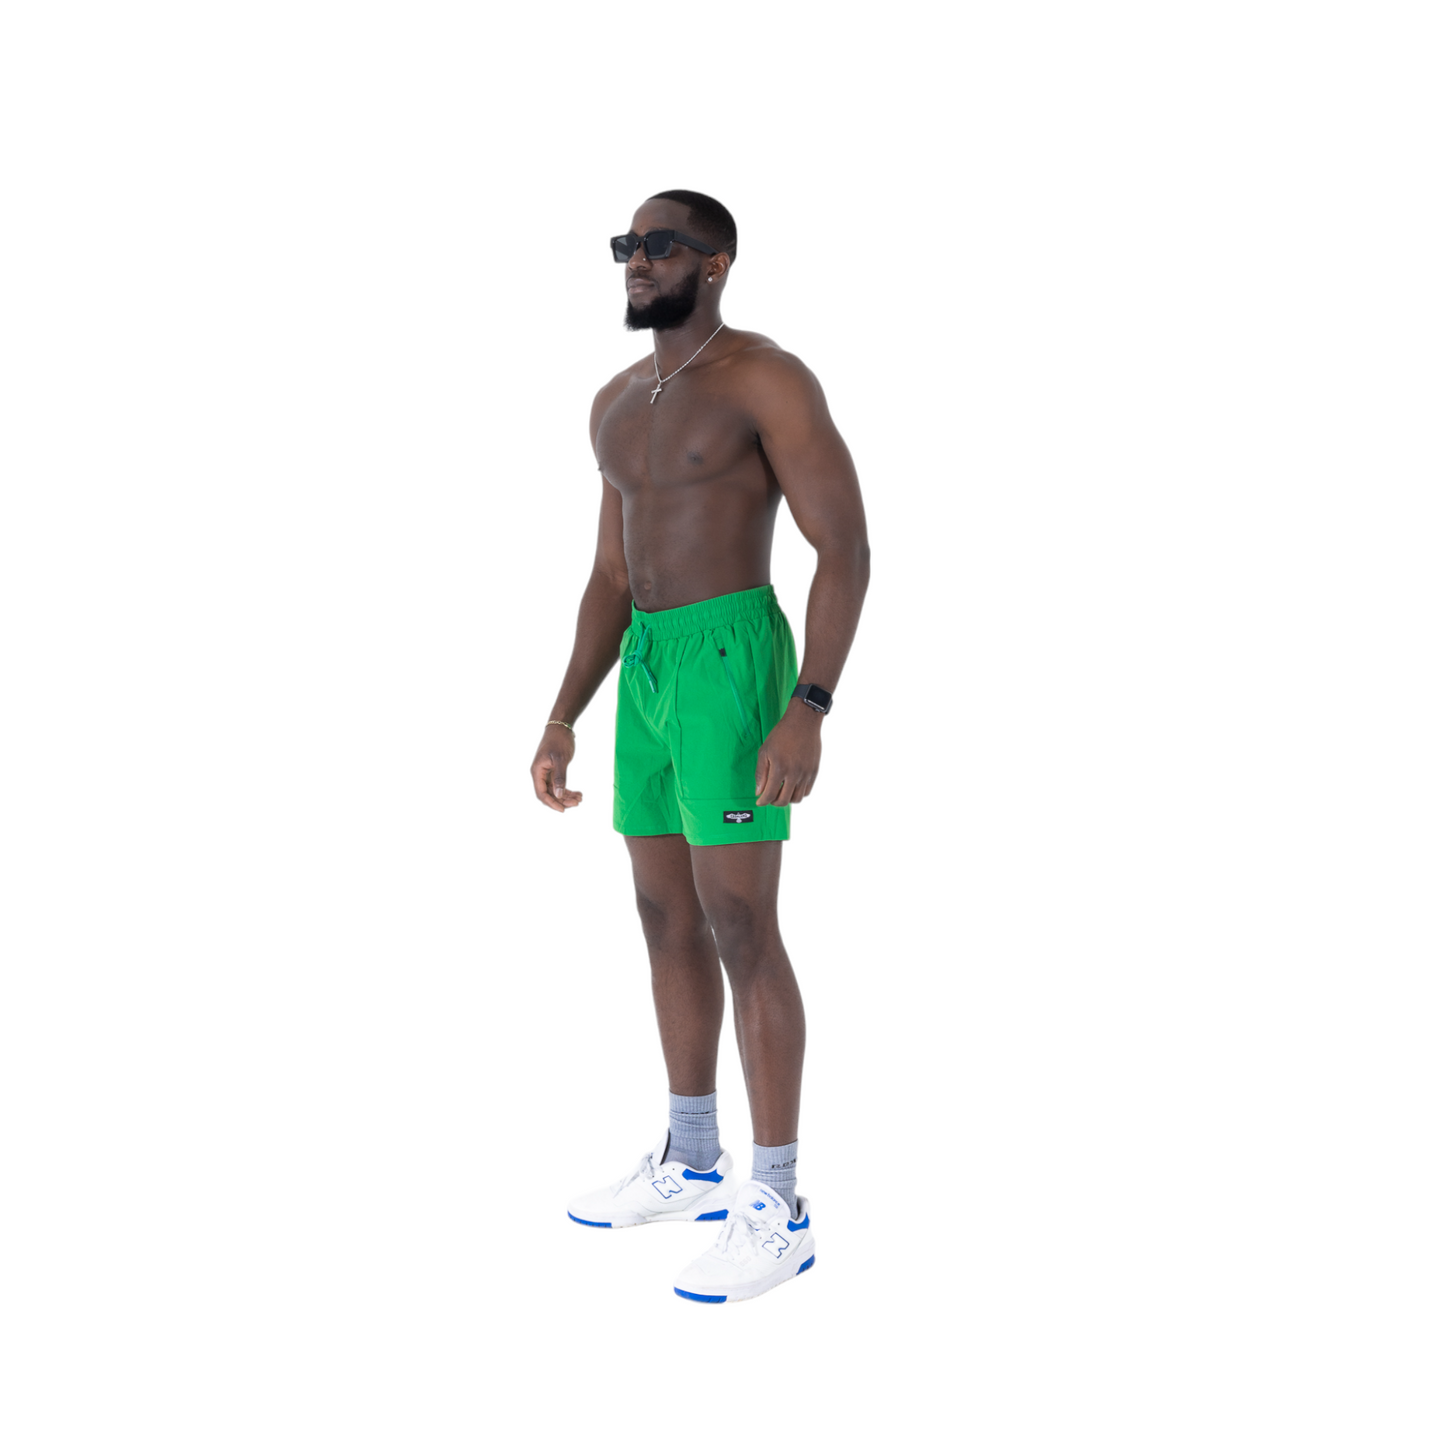 Surge Shorts : KELLY GREEN